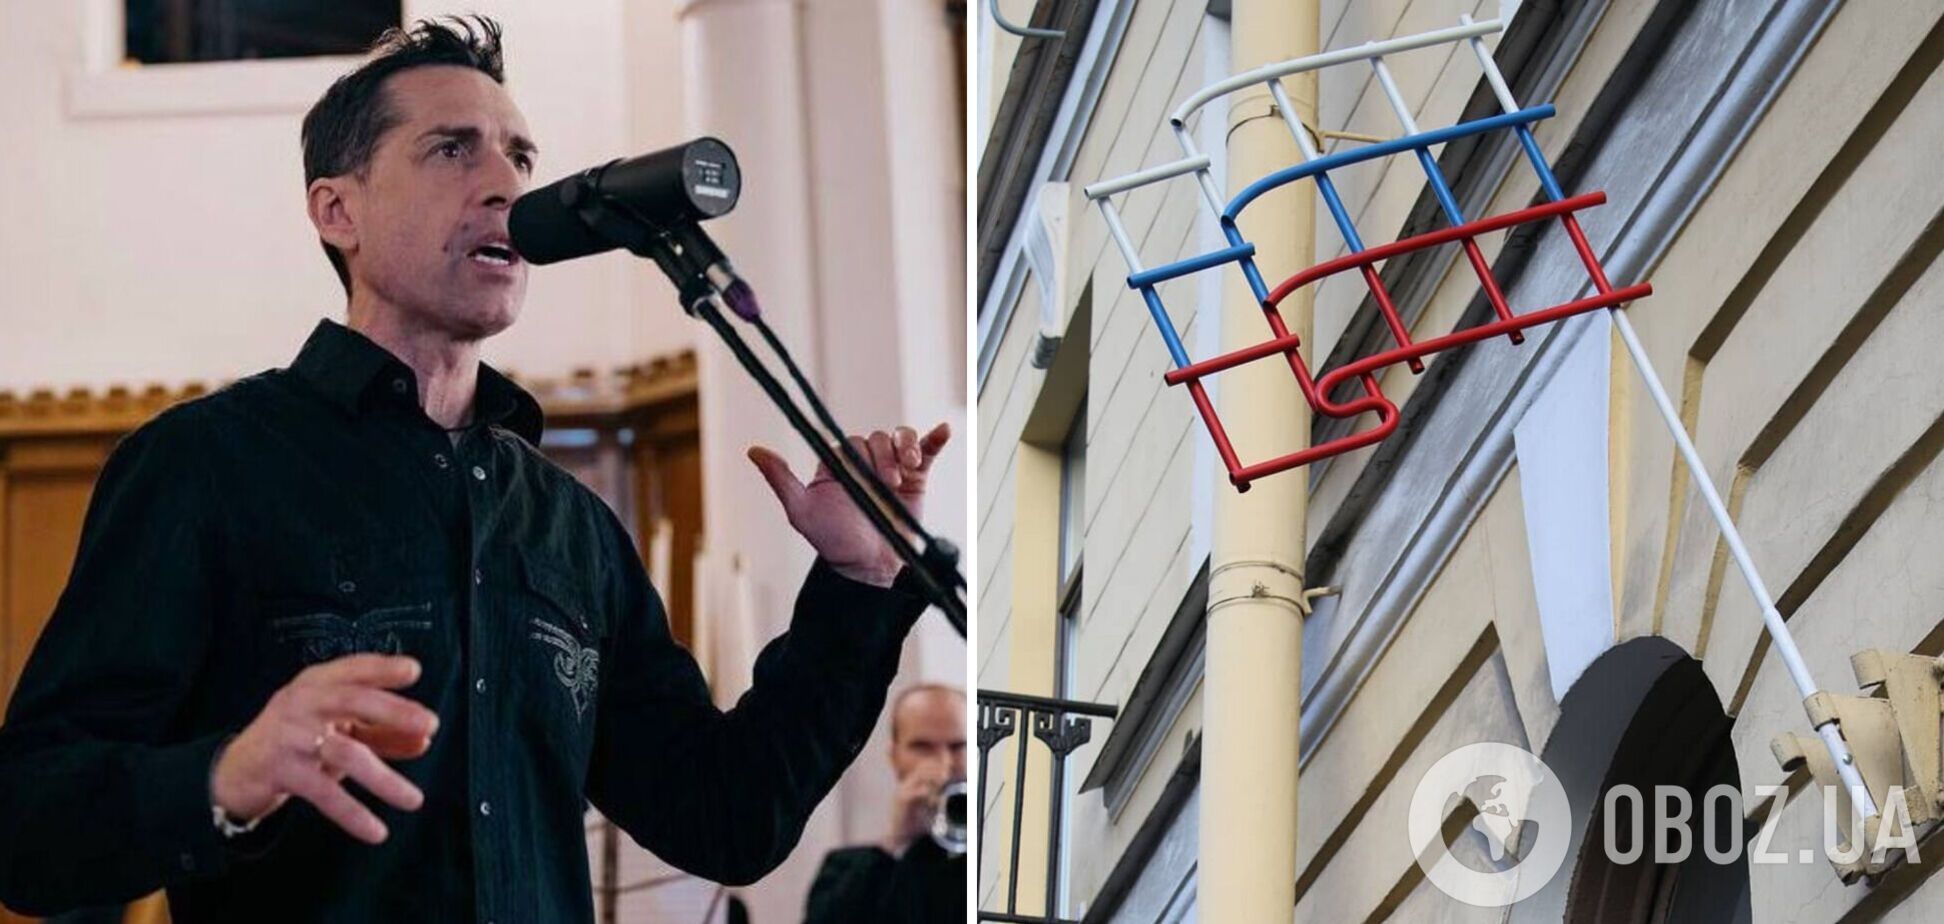 Після звинувачень у дискредитації російської армії: фронтмена гурту 'Ногу свело' оголосили 'іноагентом'